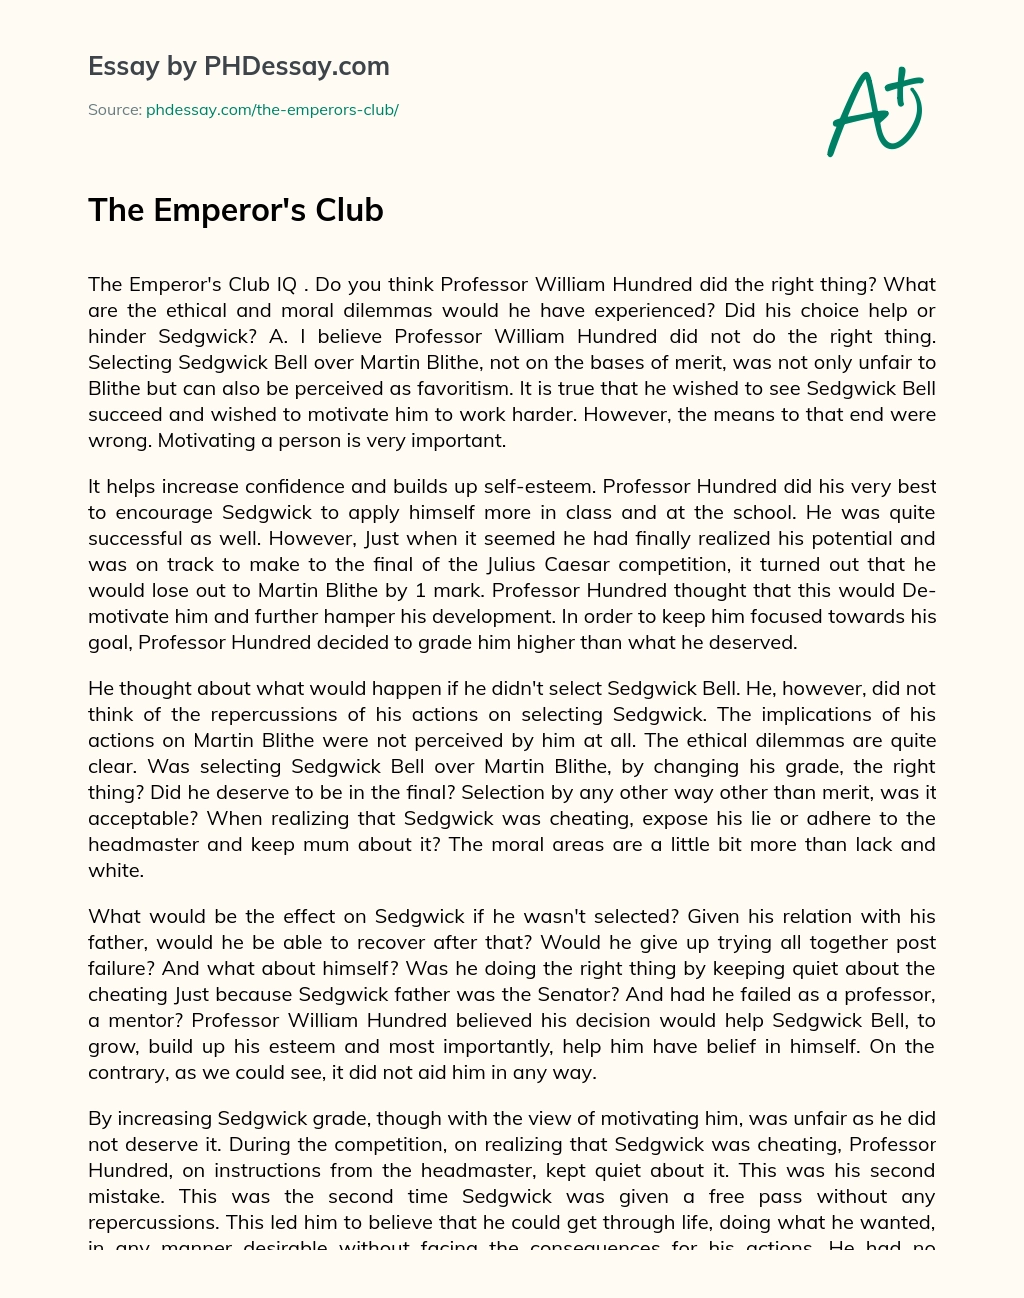 The Emperor’s Club essay